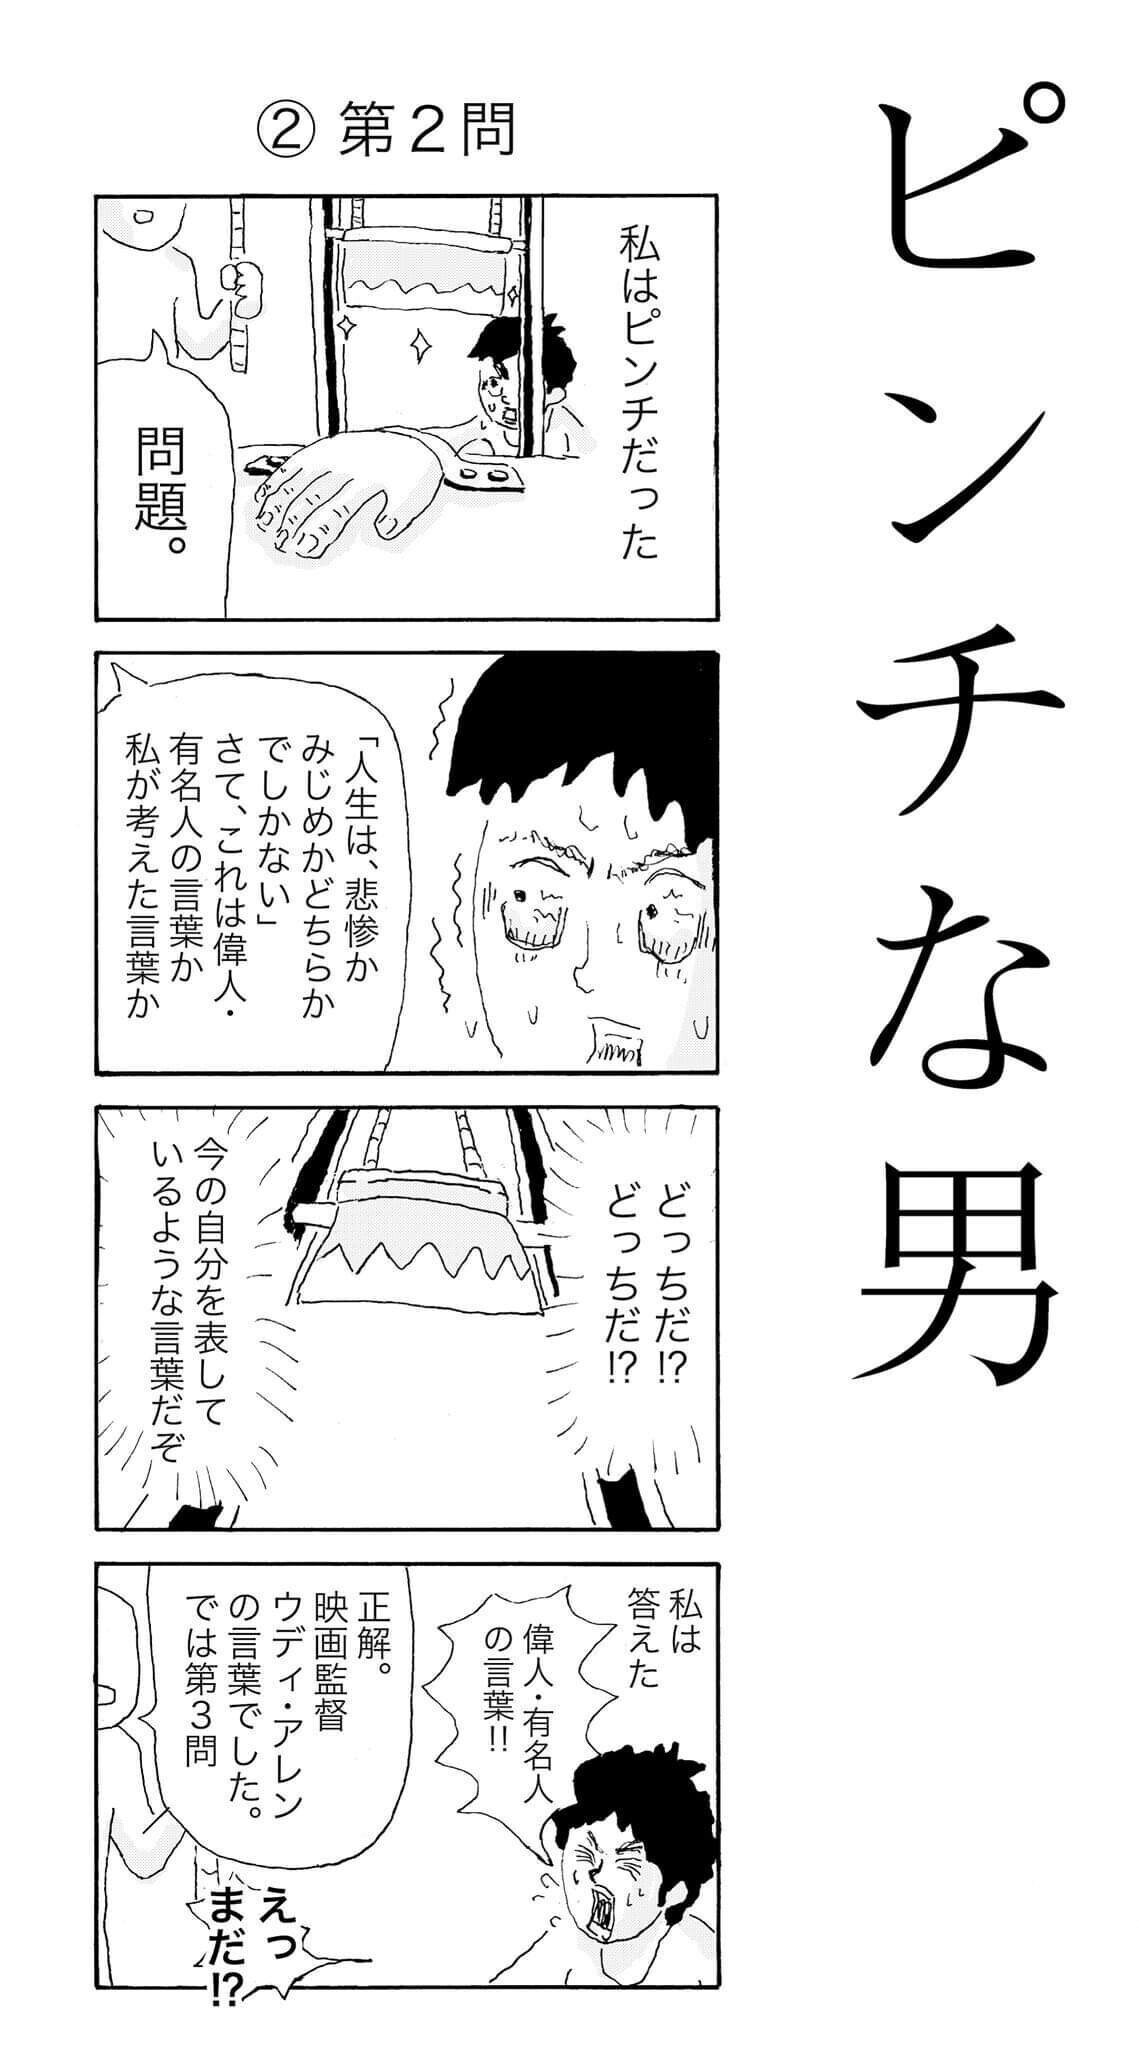 名言クイズ ピンチな男 人生とは 中川学 漫画家 Note